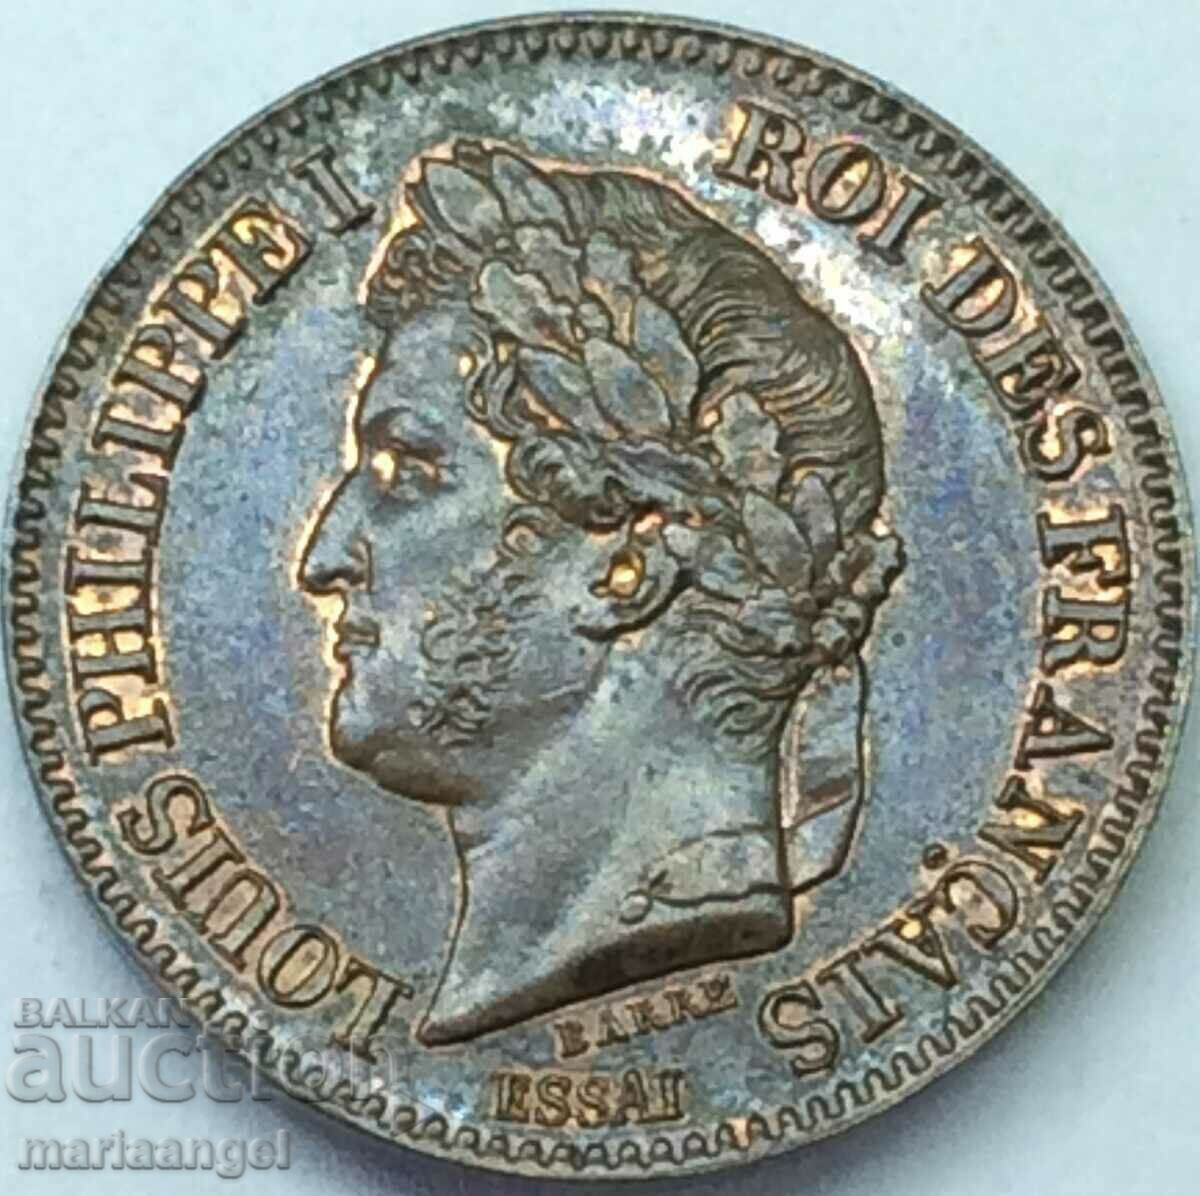 ΔΕΙΓΜΑ 2 centimes 1842 Γαλλία Louis Philippe - σπάνιο και ακριβό